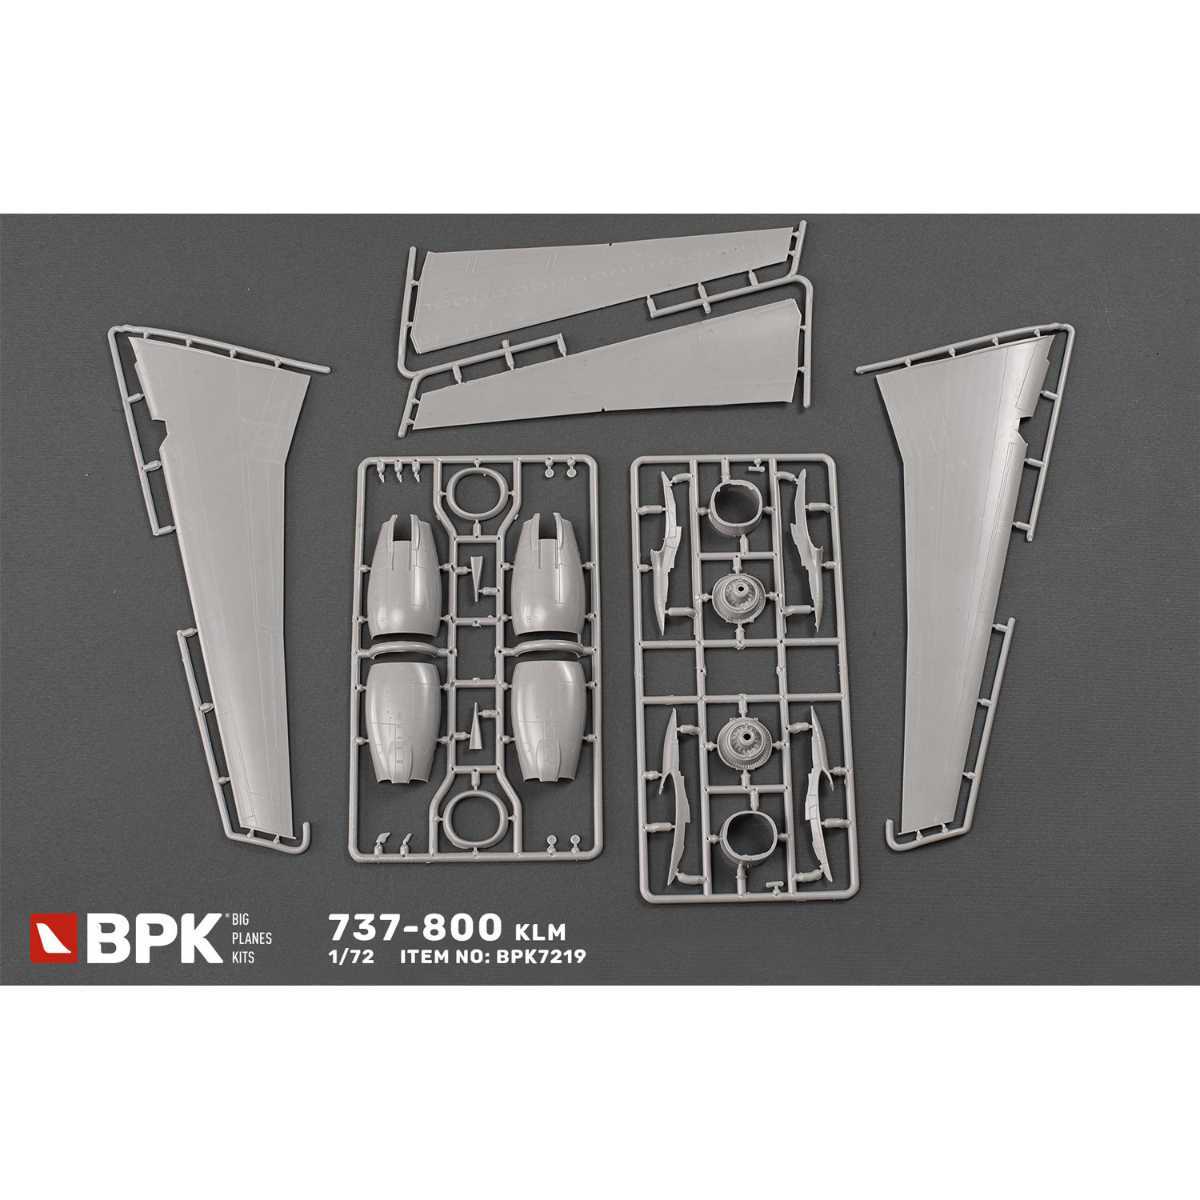 BPK KLM Holland aviation 737-800 1/72 plastic model kit 